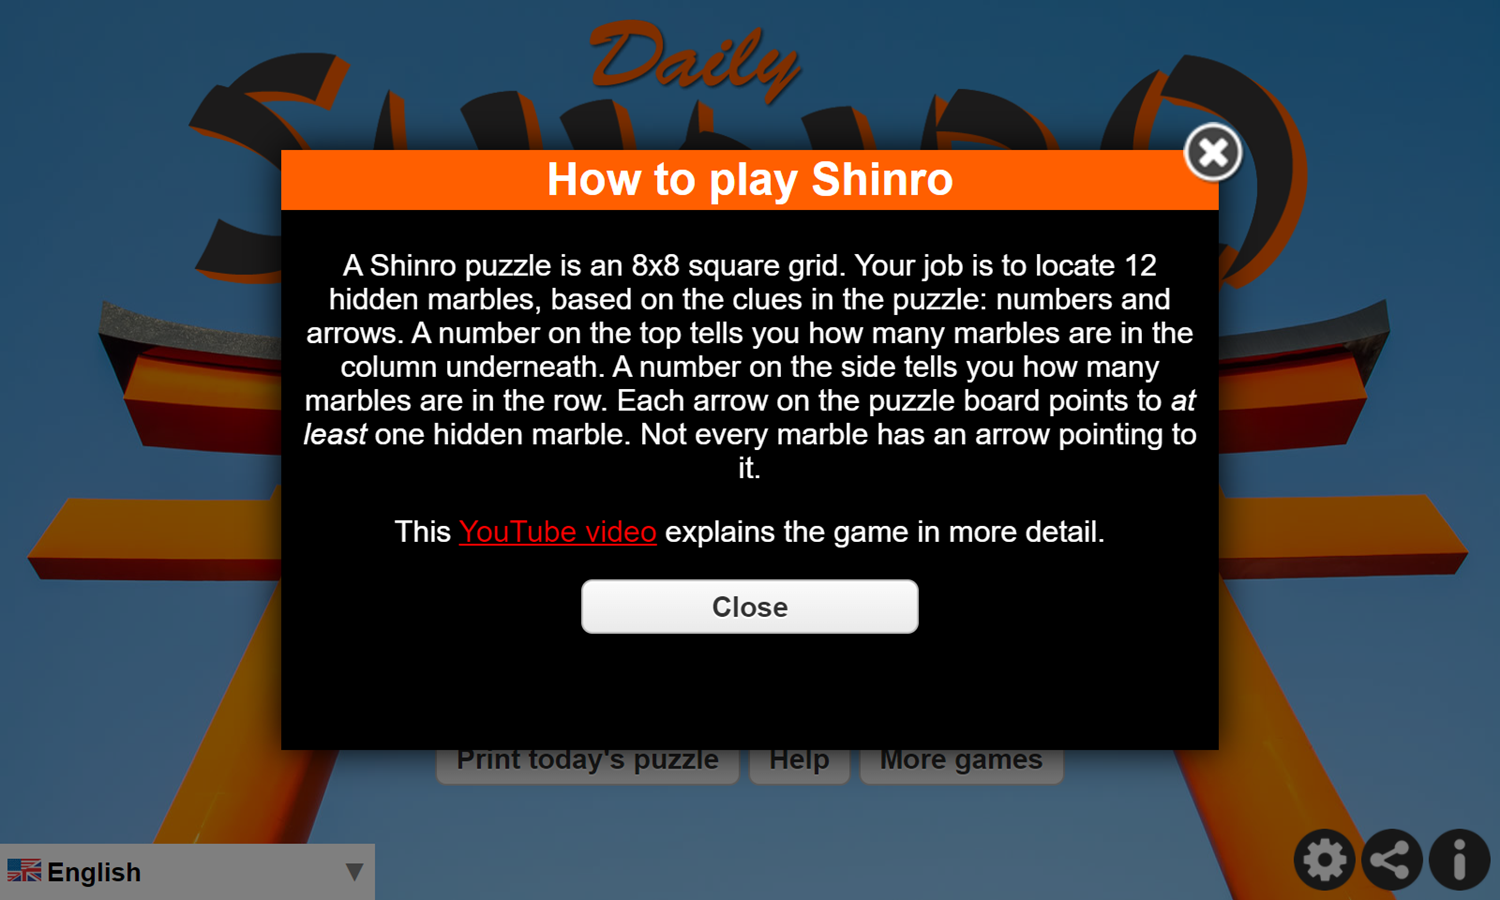 Daily Shinro Game How To Play Screenshot.